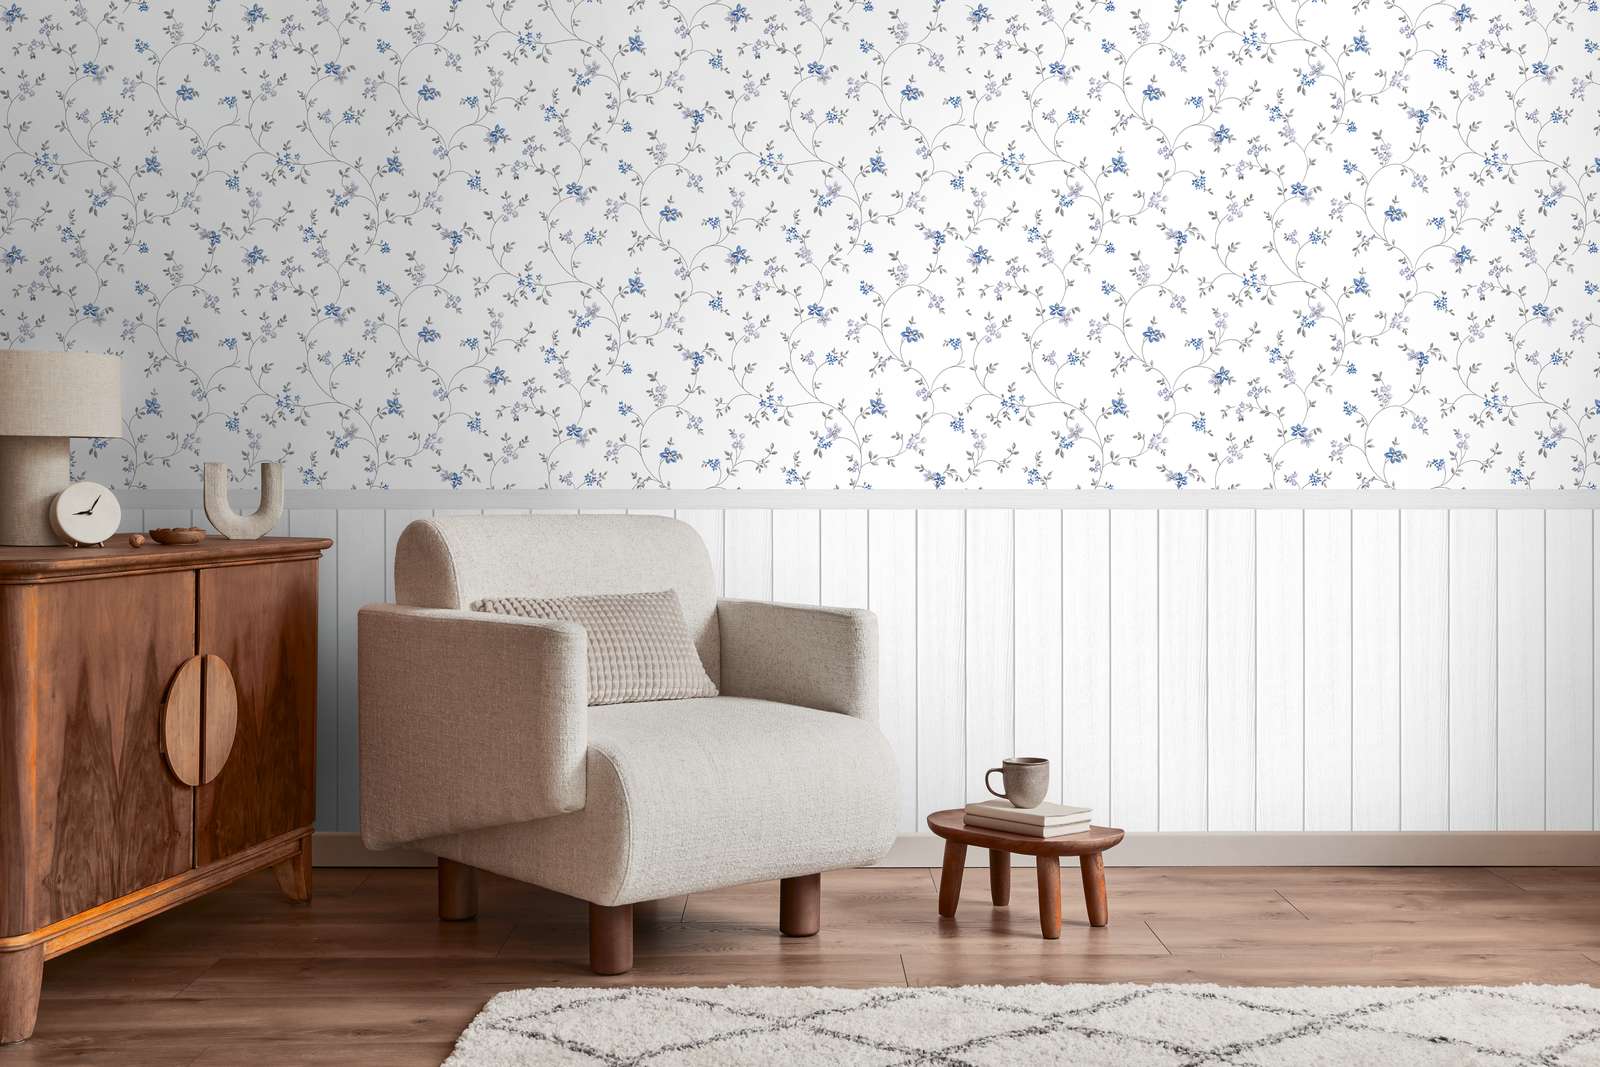             papier peint en papier intissé à motifs avec bordure de plinthe imitation bois et motif floral - blanc, gris, bleu
        